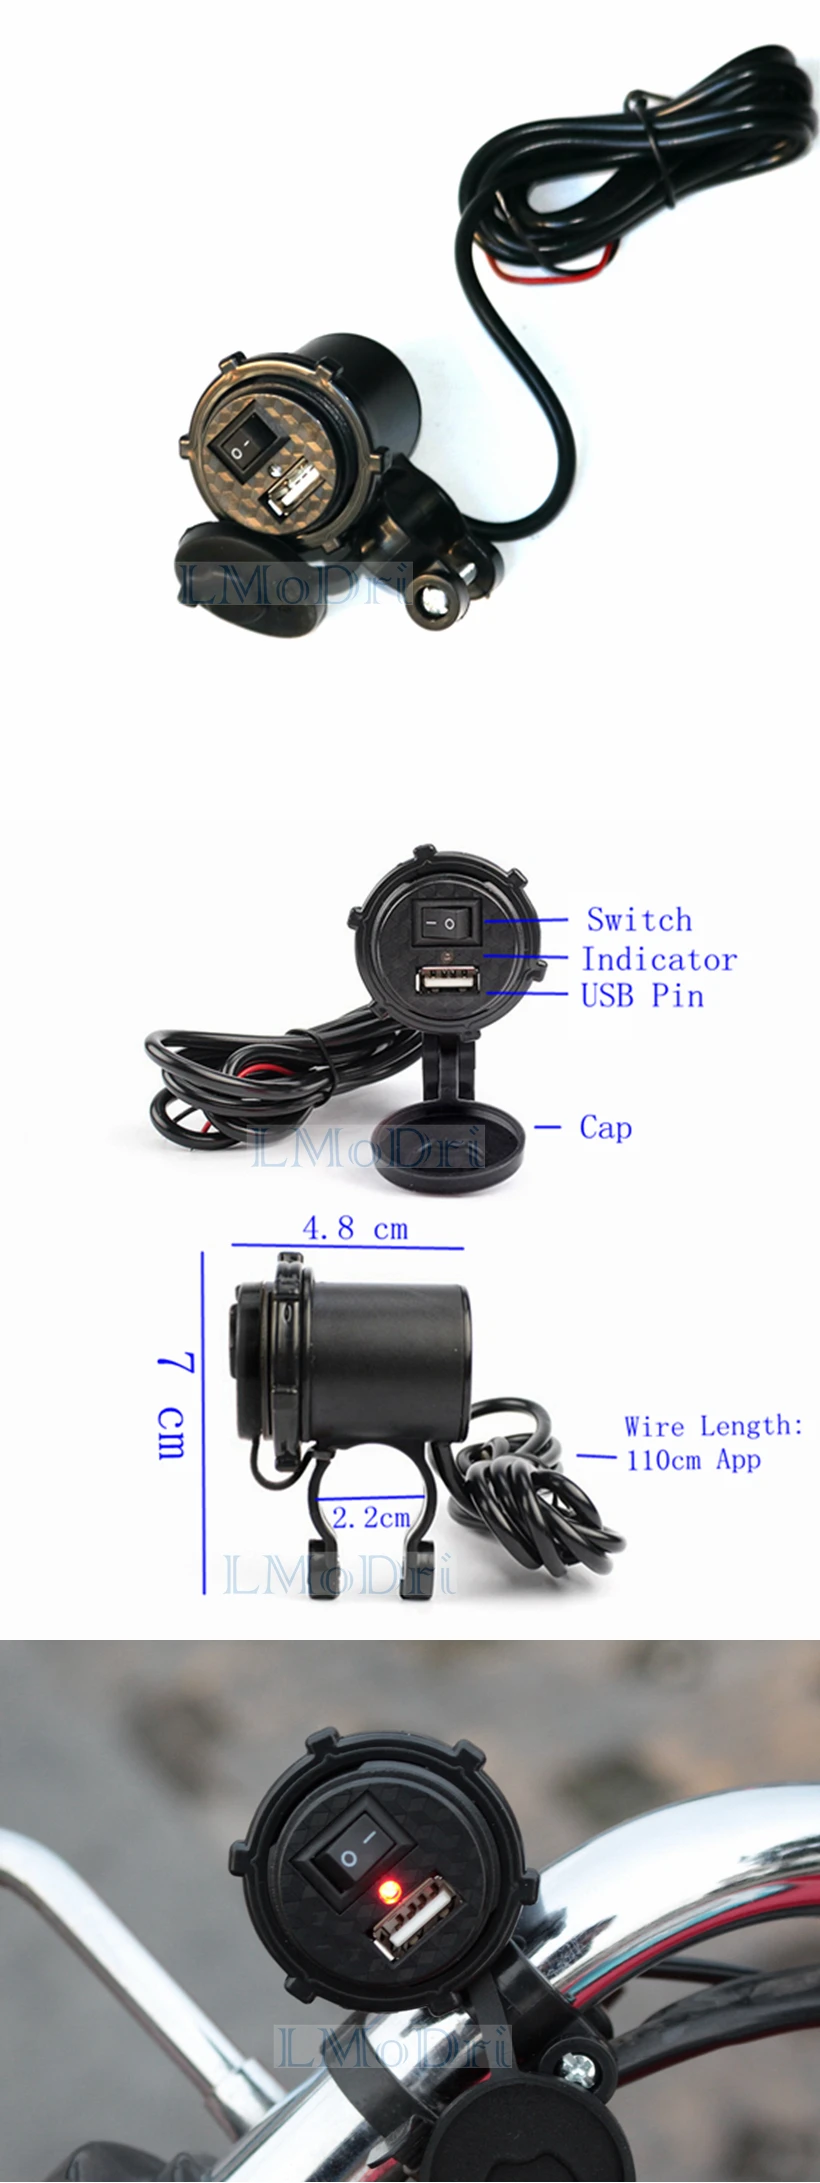 LMoDri универсальный мотоцикл водонепроницаемый USB зарядное устройство адаптер Электрический велосипед Руль питания Порт Разъем для телефона gps MP4